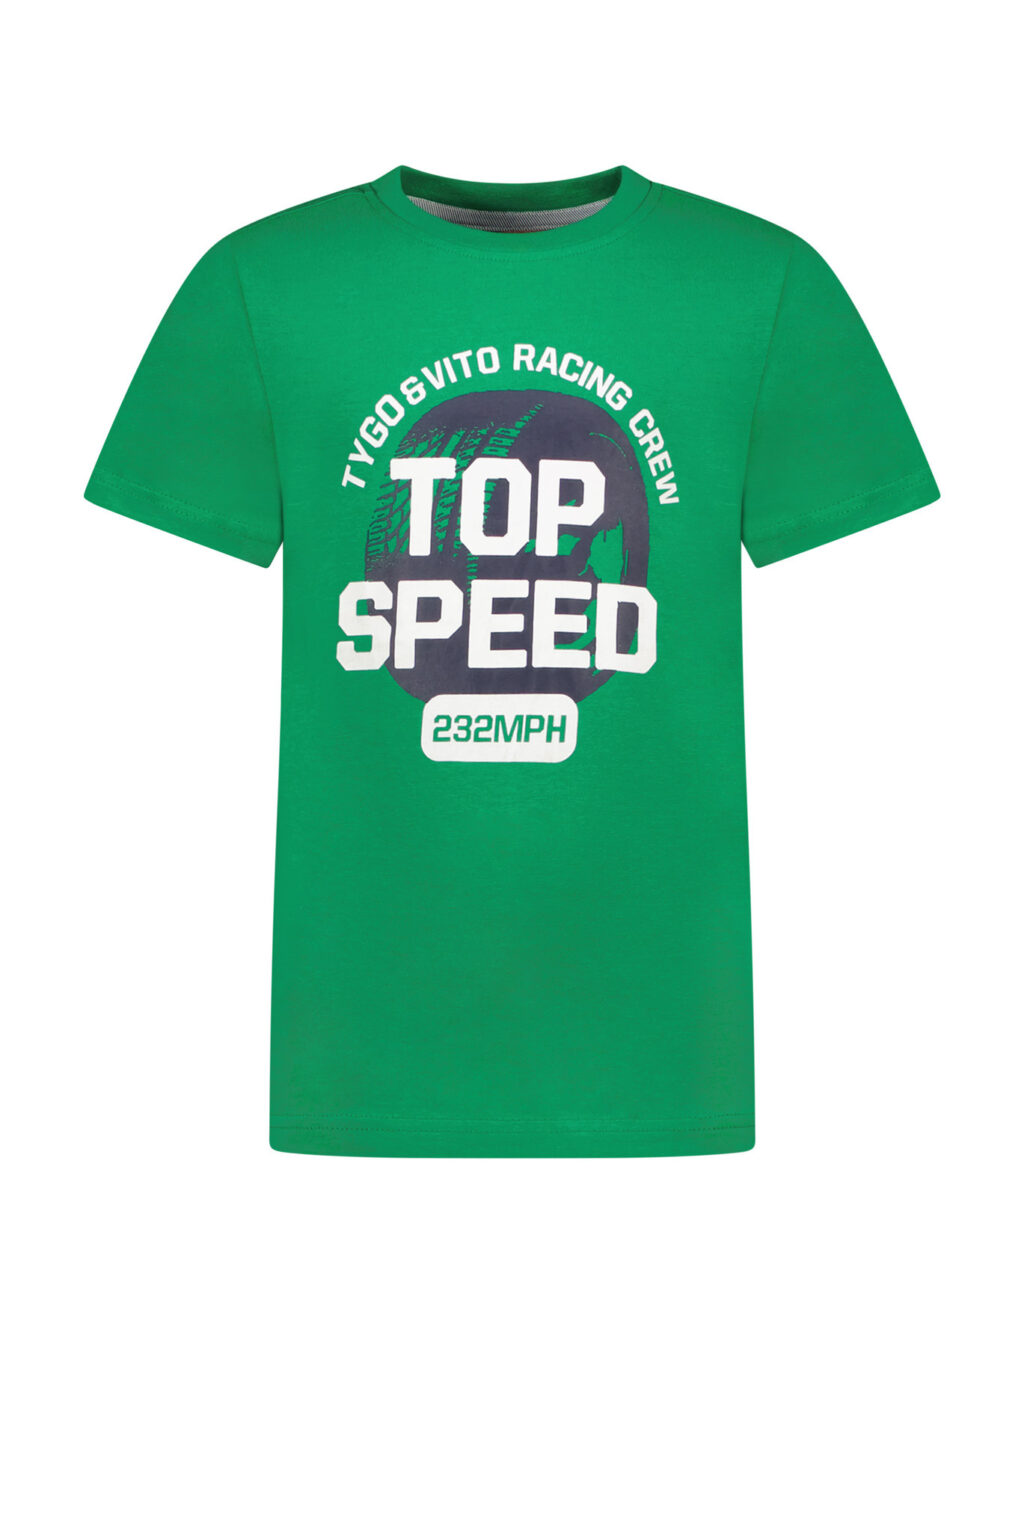 Tygo & Vito Jongens t-shirt top speed - Helder groen ~ Spinze.nl